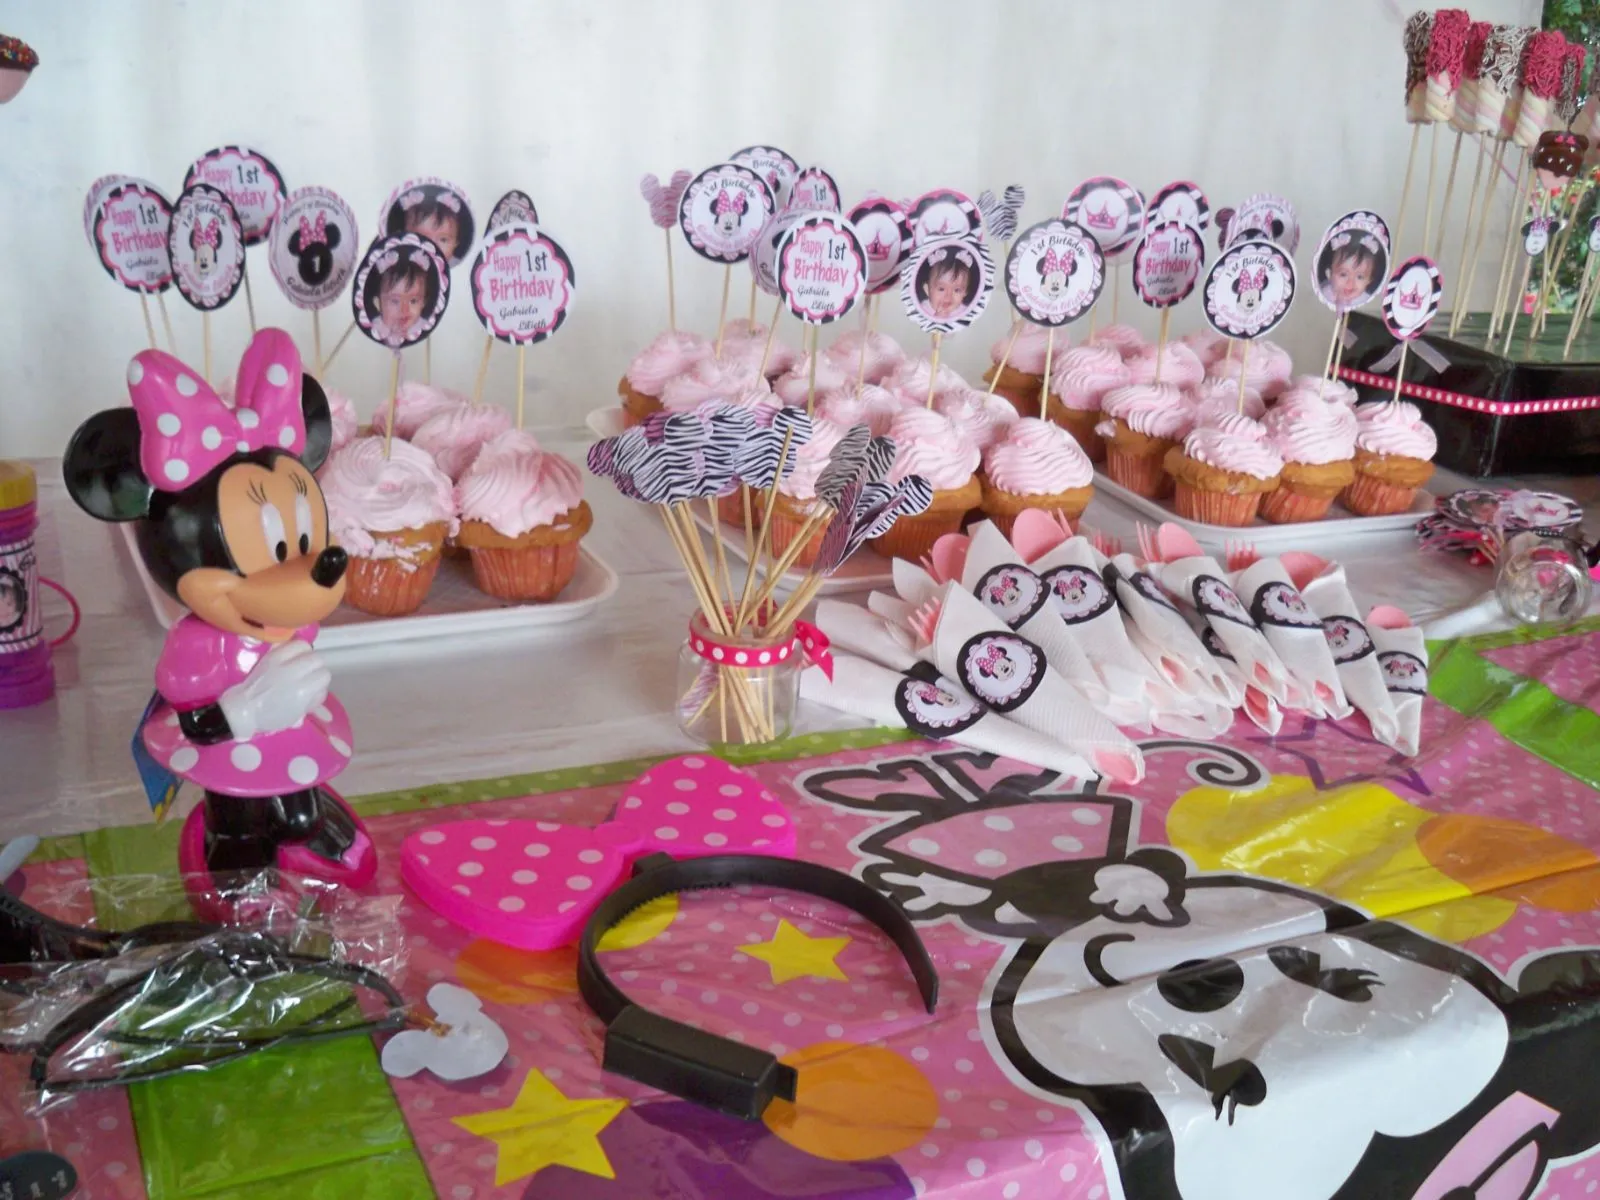  ... de mamá Pulpo: Fiesta de Minnie Mouse Pink para princesita de 1año